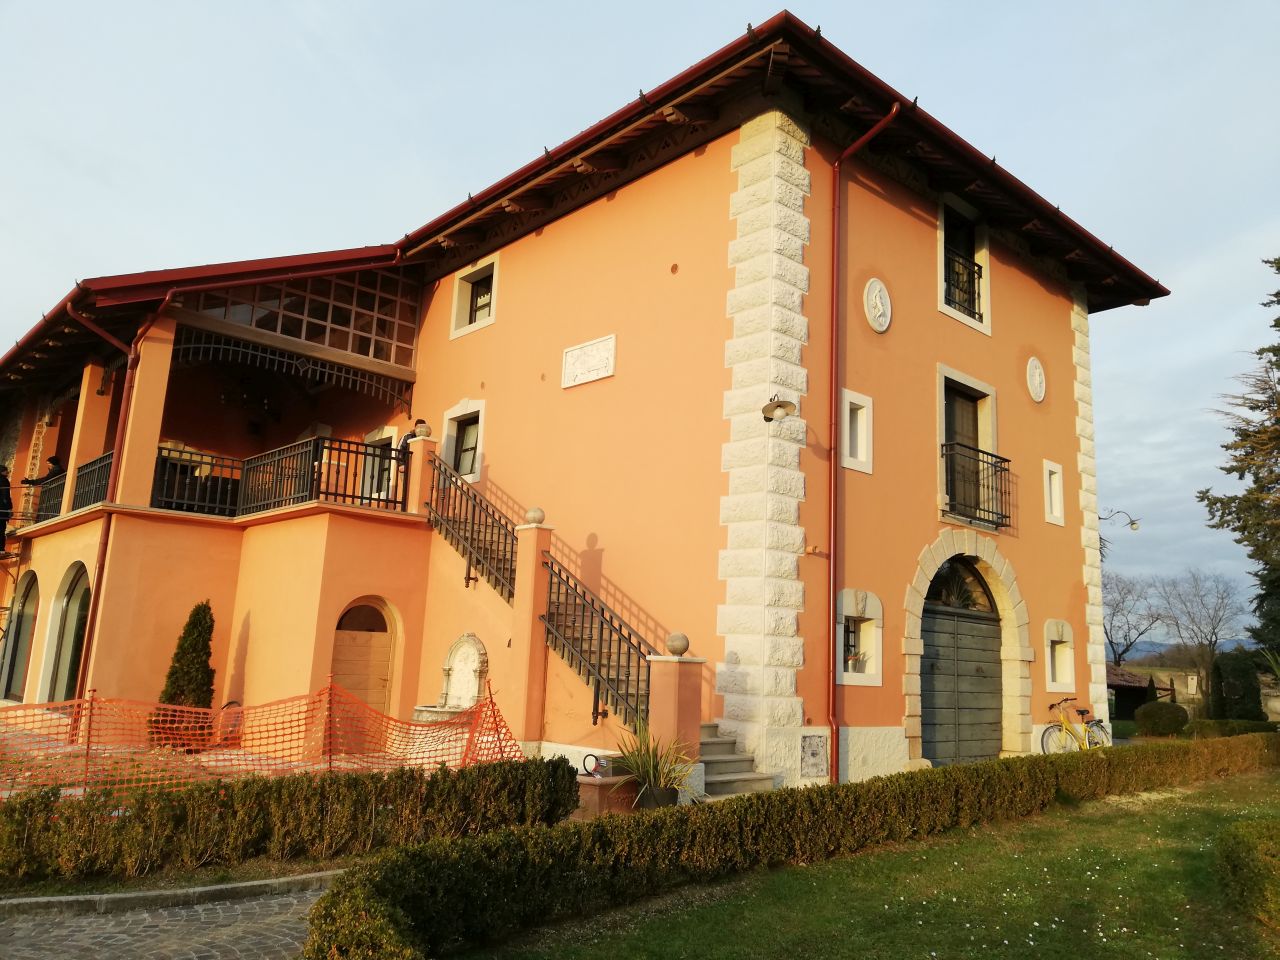 Castello di Spessa - Golf & Wine Resort (foresteria, privata) - Capriva del Friuli (GO)  (XVIII)